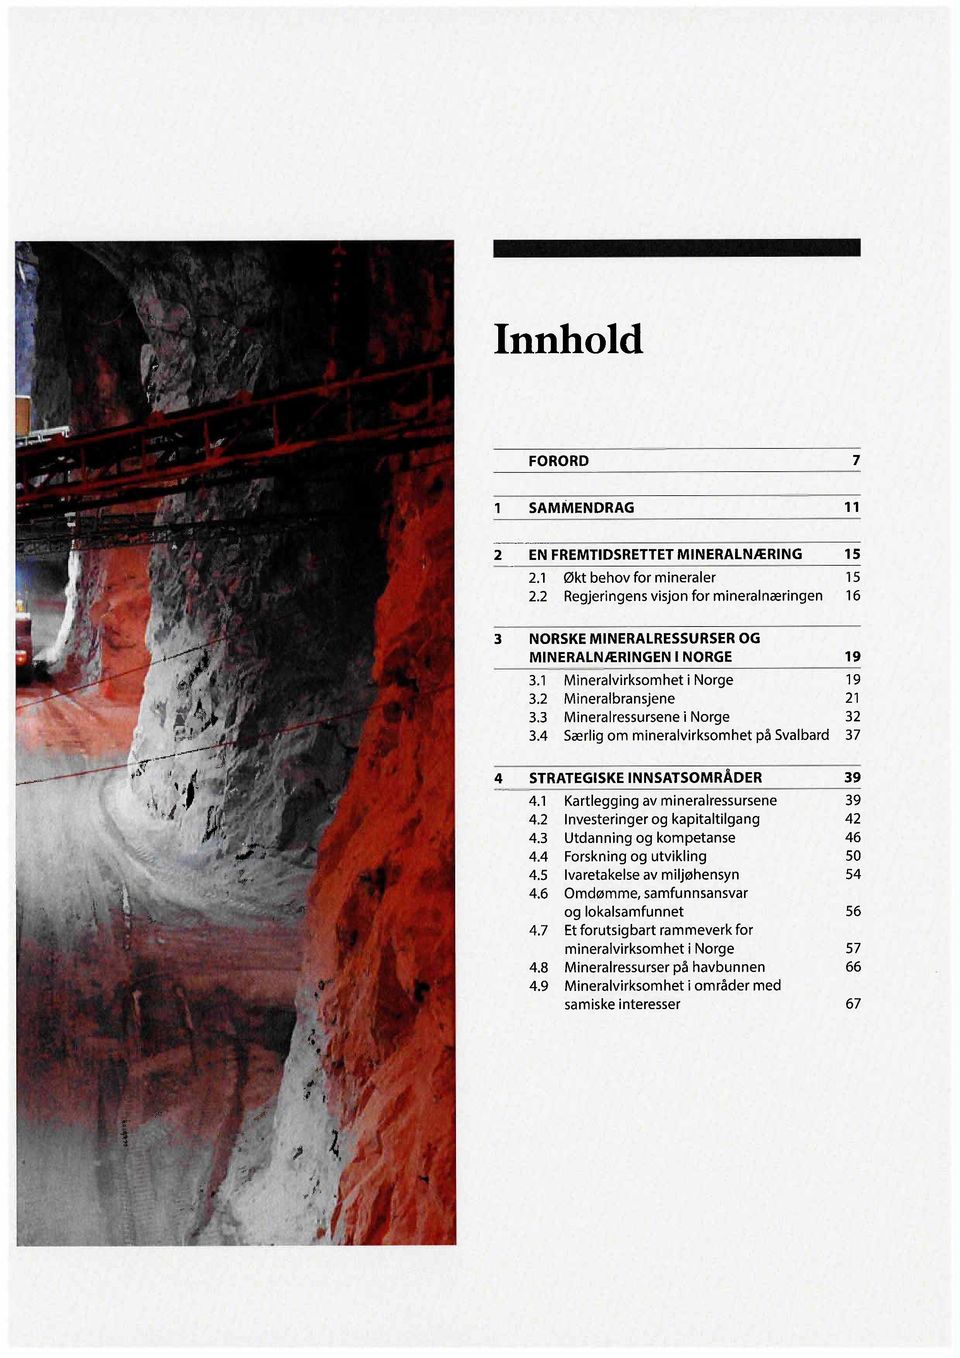 3 Mineralressursene i Norge 32 3.4 Særlig om mineralvirksomhet på Svalbard 37 4 STRATEGISKE INNSATSOMRÅDER 39 4.1 Kartlegging av mineralressursene 39 4.